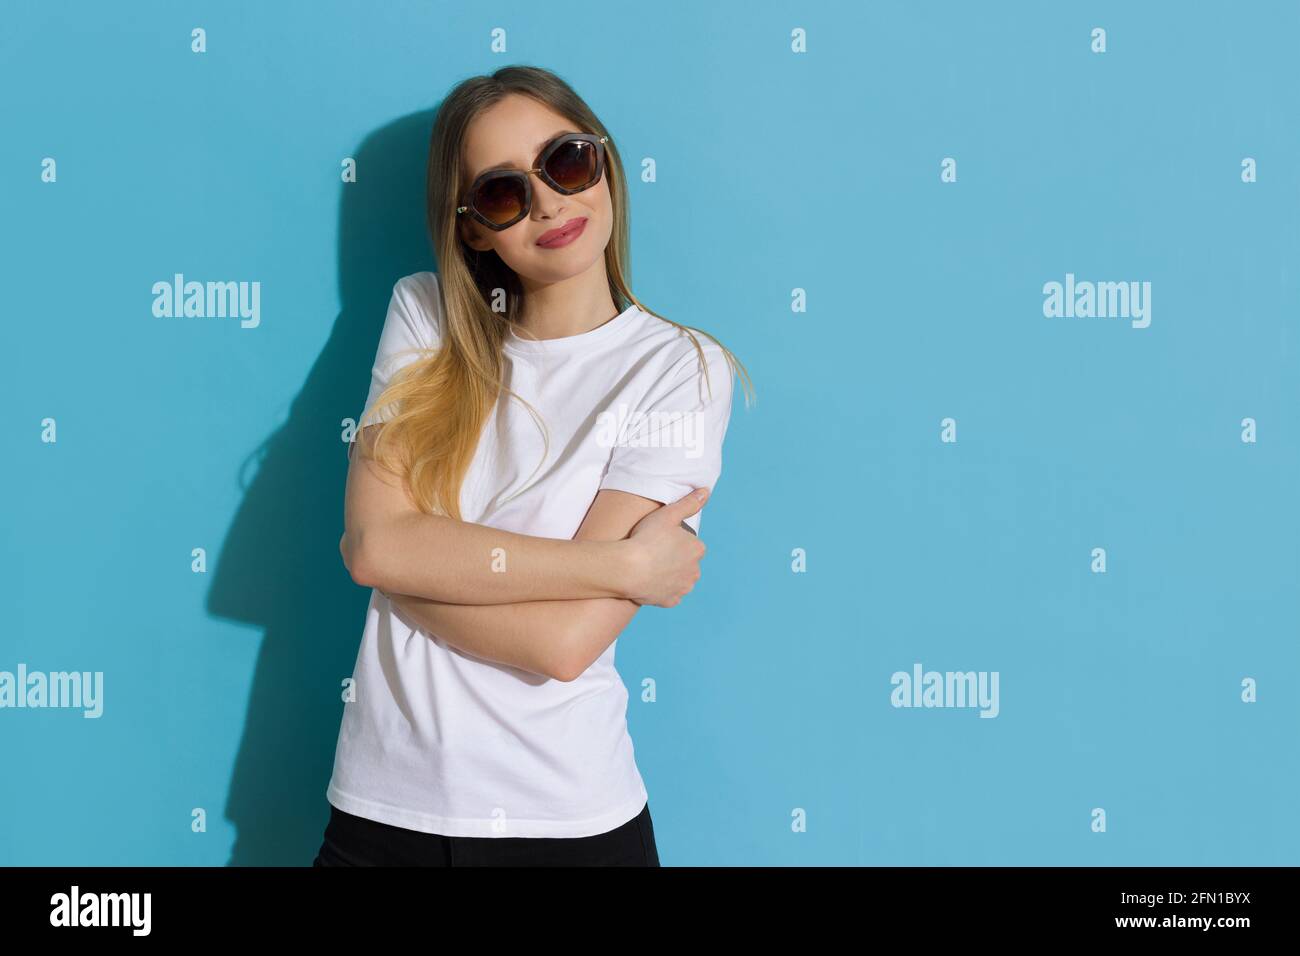 Glückliche junge Frau in weißem Hemd und Sonnenbrille hält gekreuzte Arme, schaut zur Seite und lächelt. Studio-Aufnahme auf blauem Hintergrund mit Hüfthöhe. Stockfoto